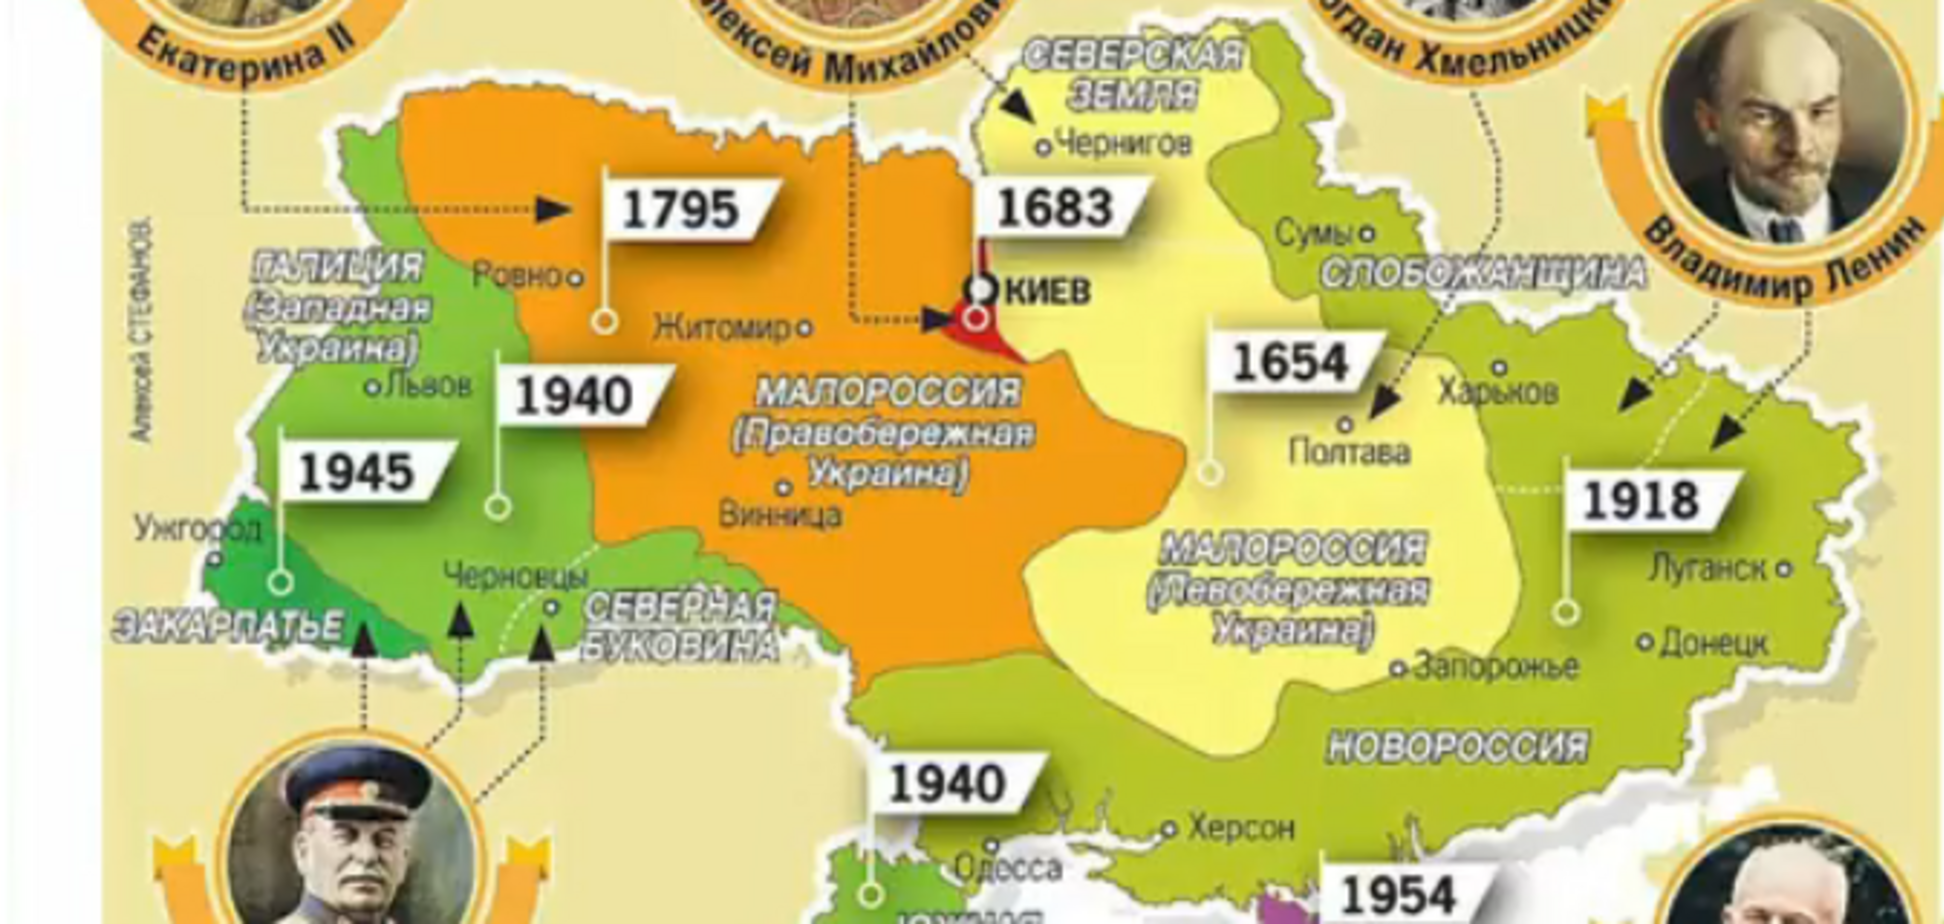 ''Киев — наш город'': на росТВ показали ''расчлененную'' карту Украины